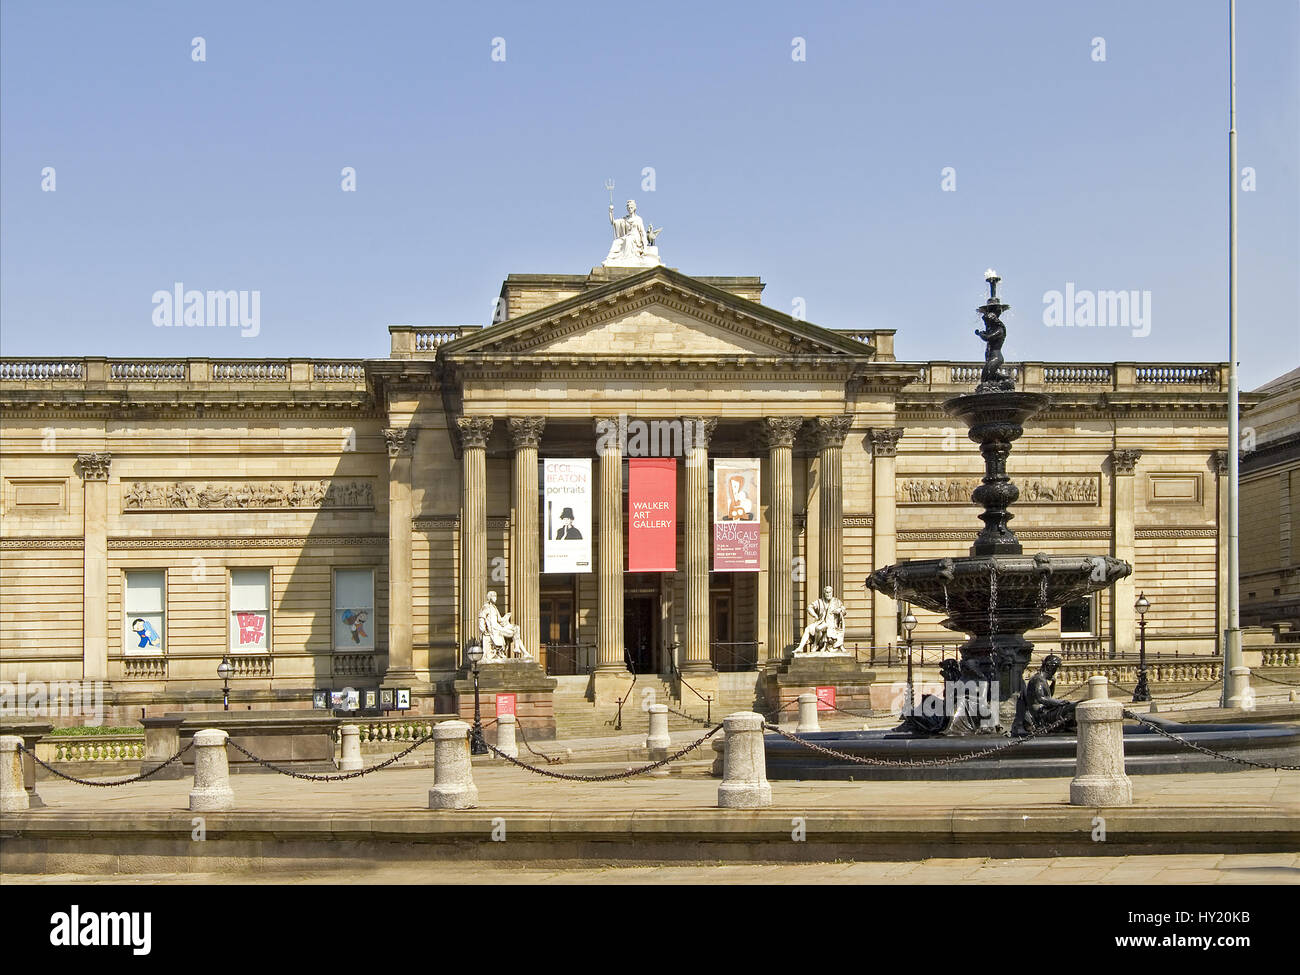 Der Walker Art Gallery ist eine Kunstgalerie in Liverpool, beherbergt eine der bedeutendsten Kunstsammlungen in England, außerhalb von London Bestandteil der Natio Stockfoto